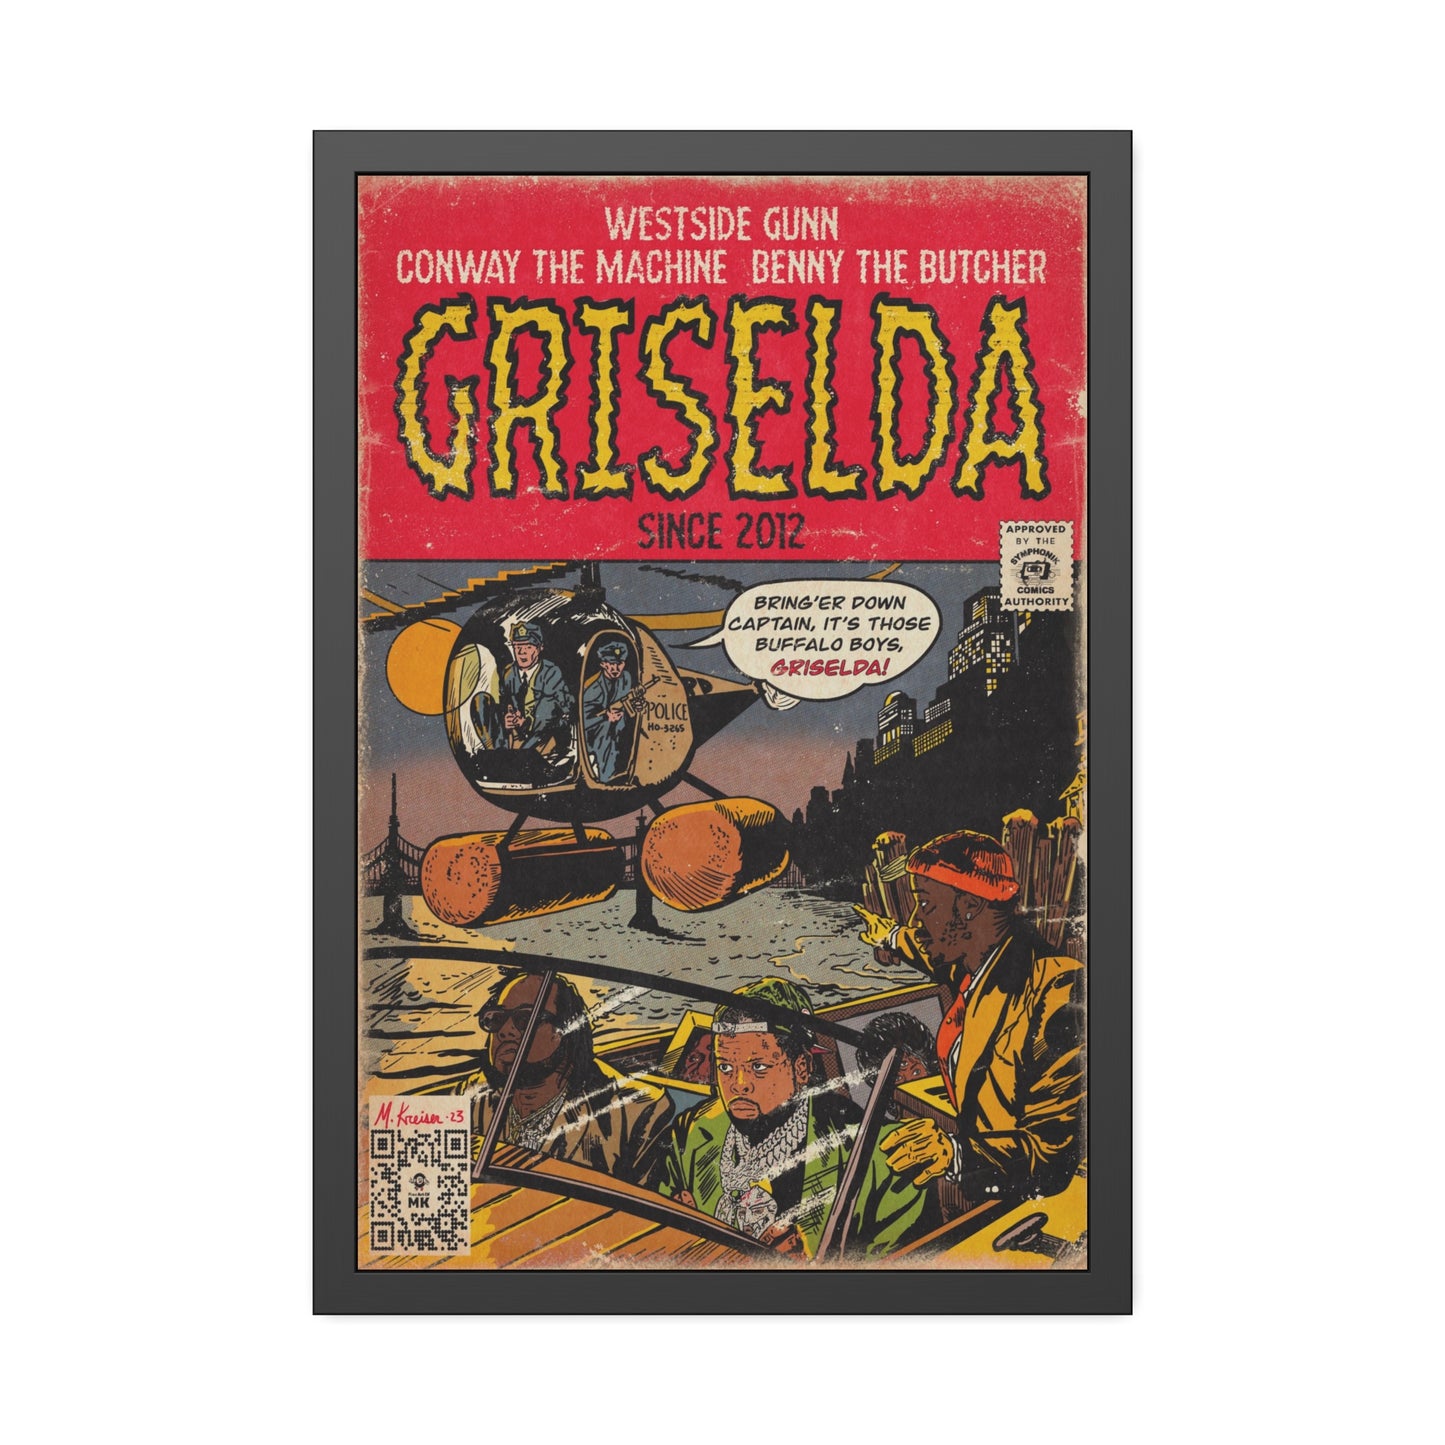 Griselda - Comic Book Art - Framed Paper Posters